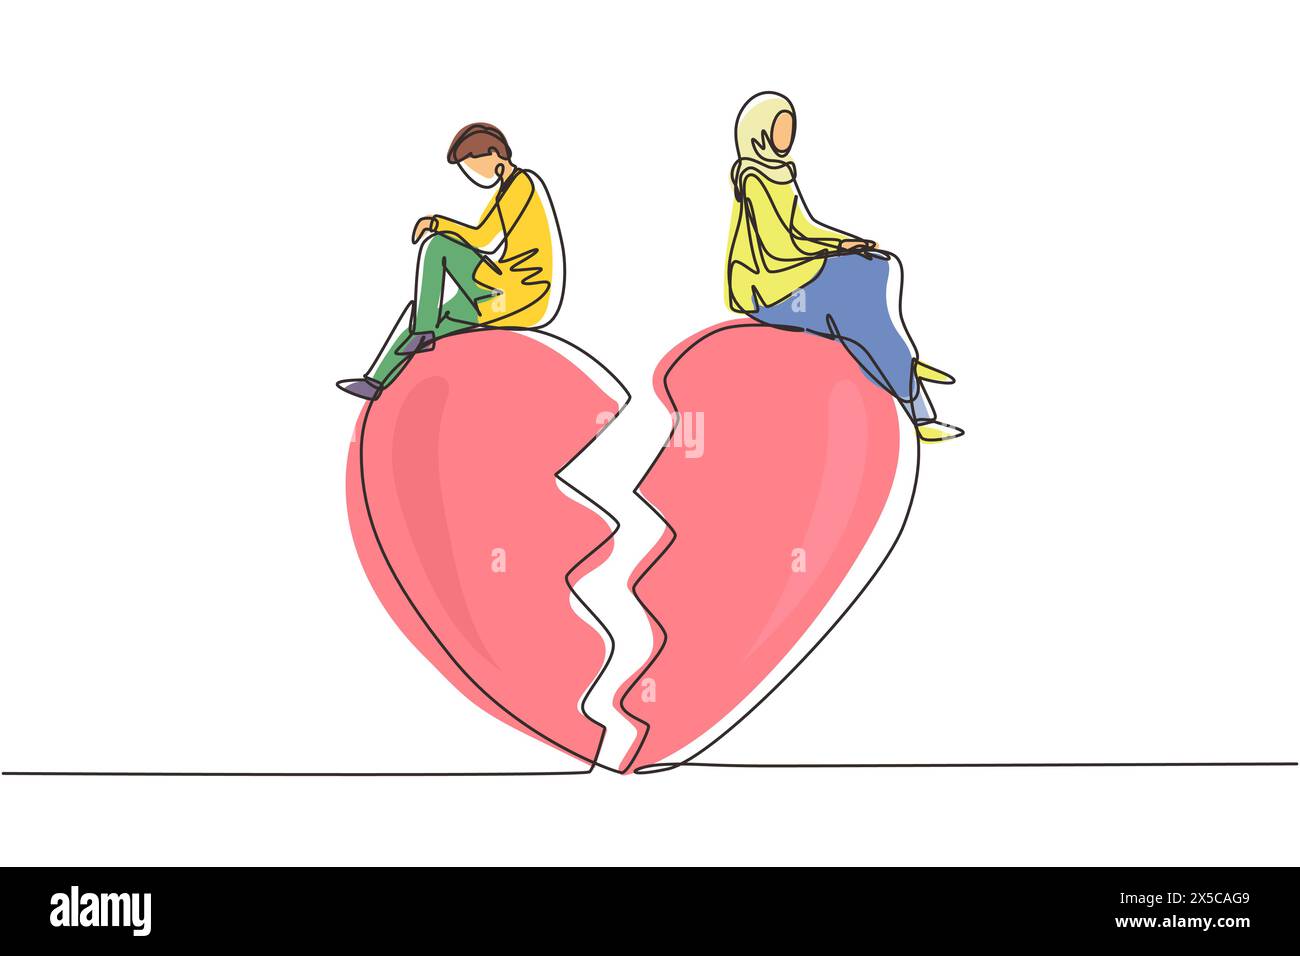 Eine kontinuierliche Zeichnungsbeziehung bricht zusammen, gebrochenes Herz, Paarung in entgegengesetzter Richtung. Ein arabisches Paar sitzt auf einer großen gebrochenen Herzform. S Stock Vektor